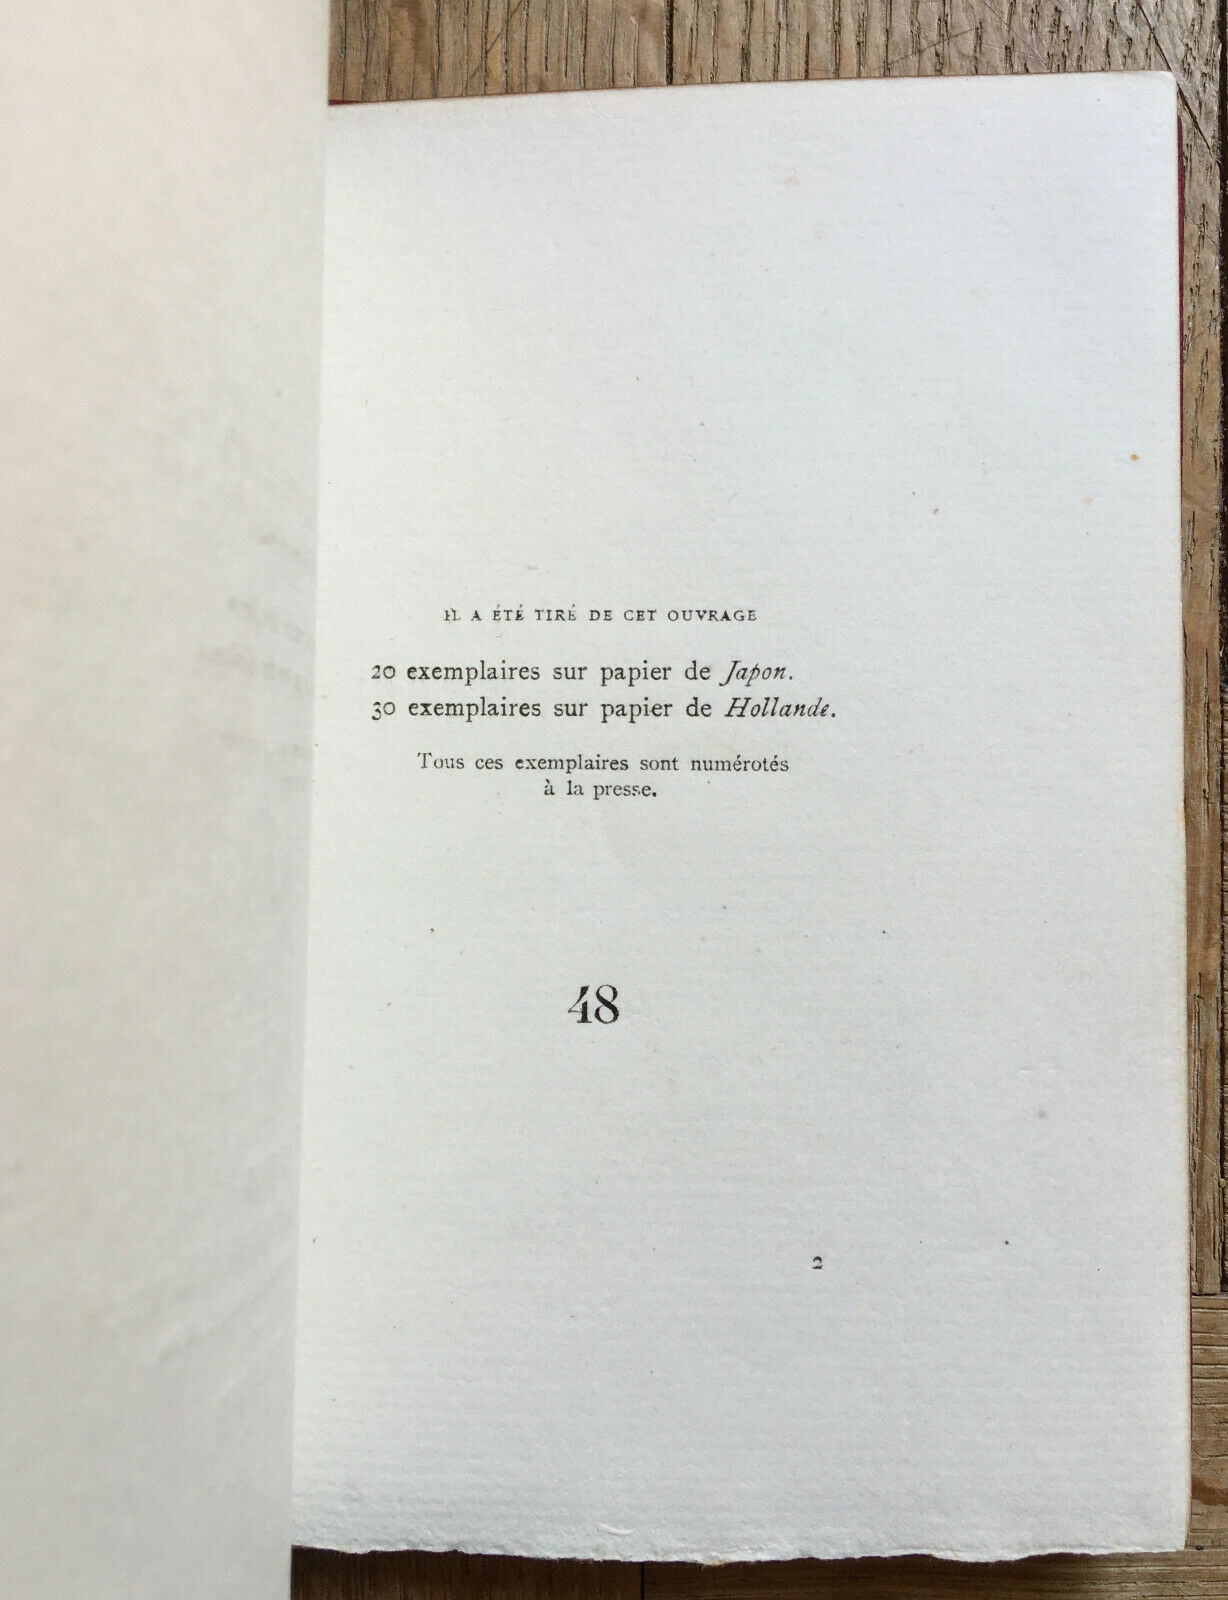 Ballieu, A. Jacques  — Les Navrements — édition originale — envoi autographe de l'auteur — Ollendorff — 1895